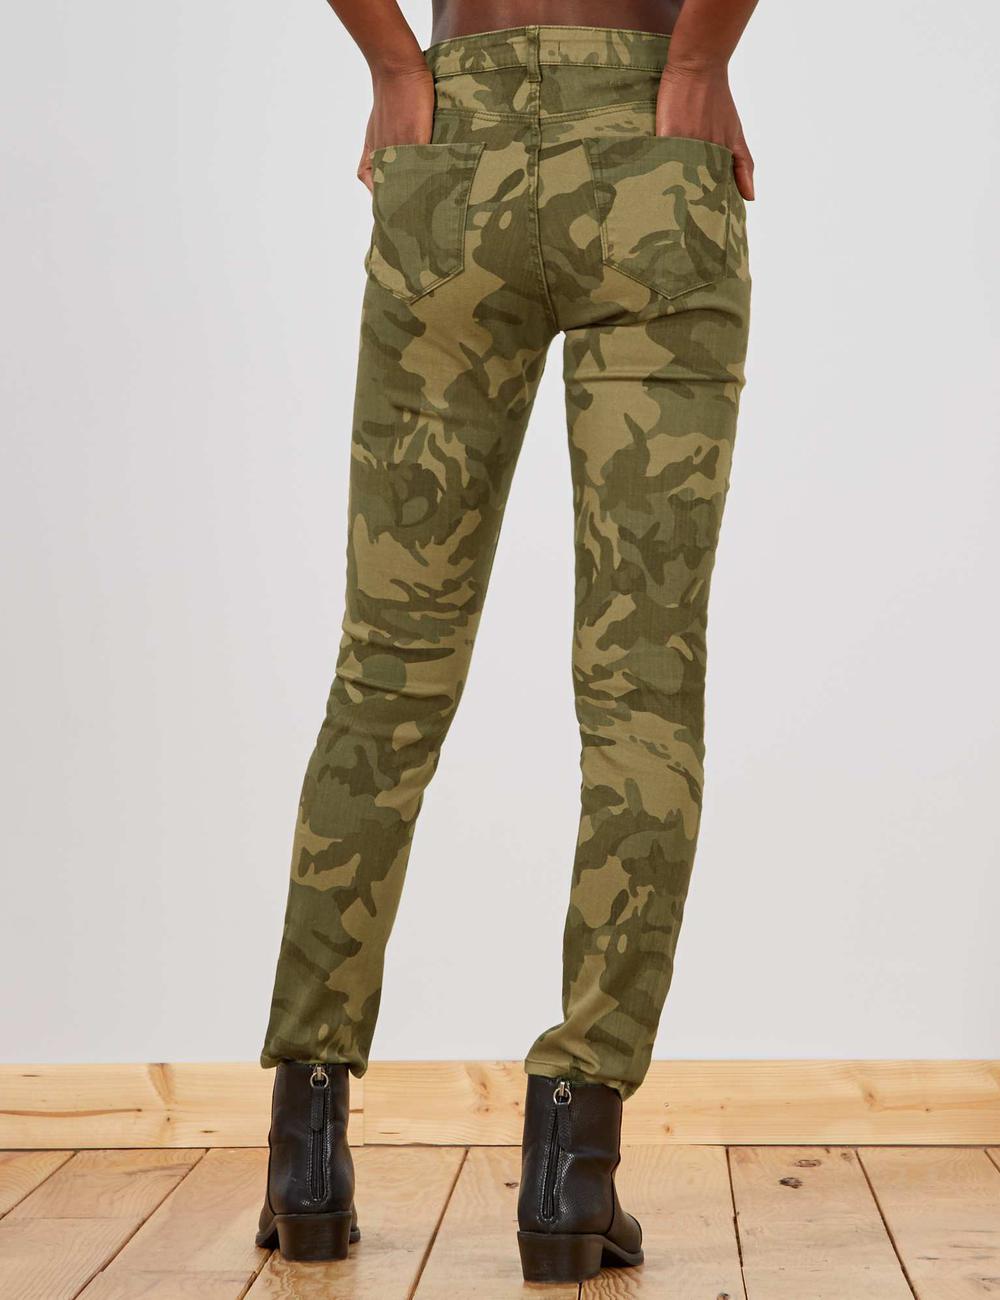 Buy Slim fit camouflage jeans Online in Dubai & the UAE|Kiabi